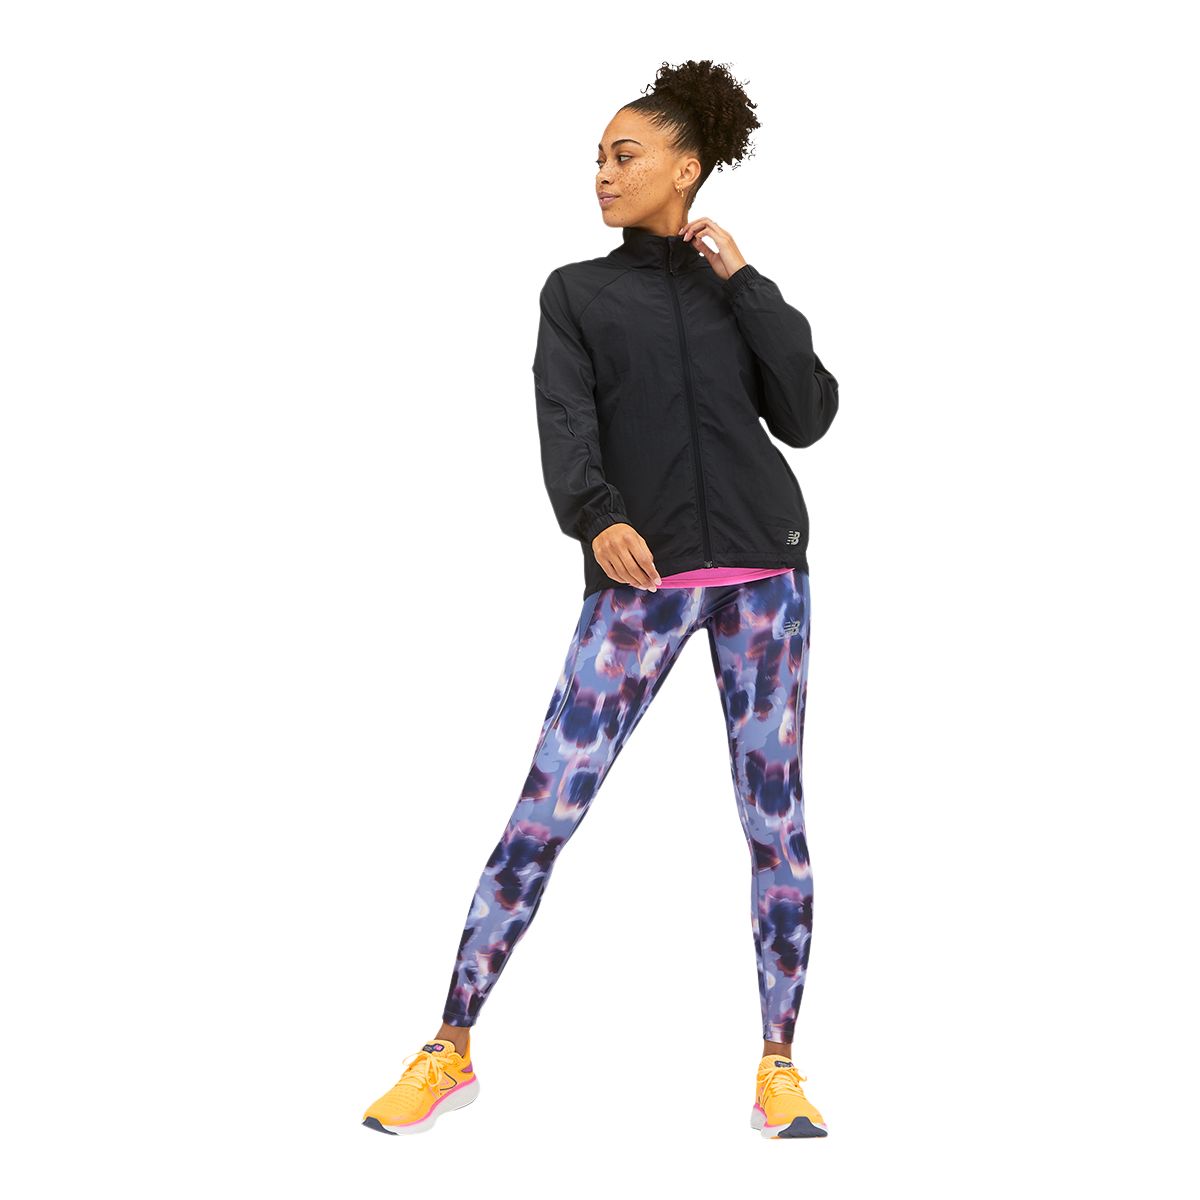 Women's New Balance Impact Run Light Pack Jacket Reviews